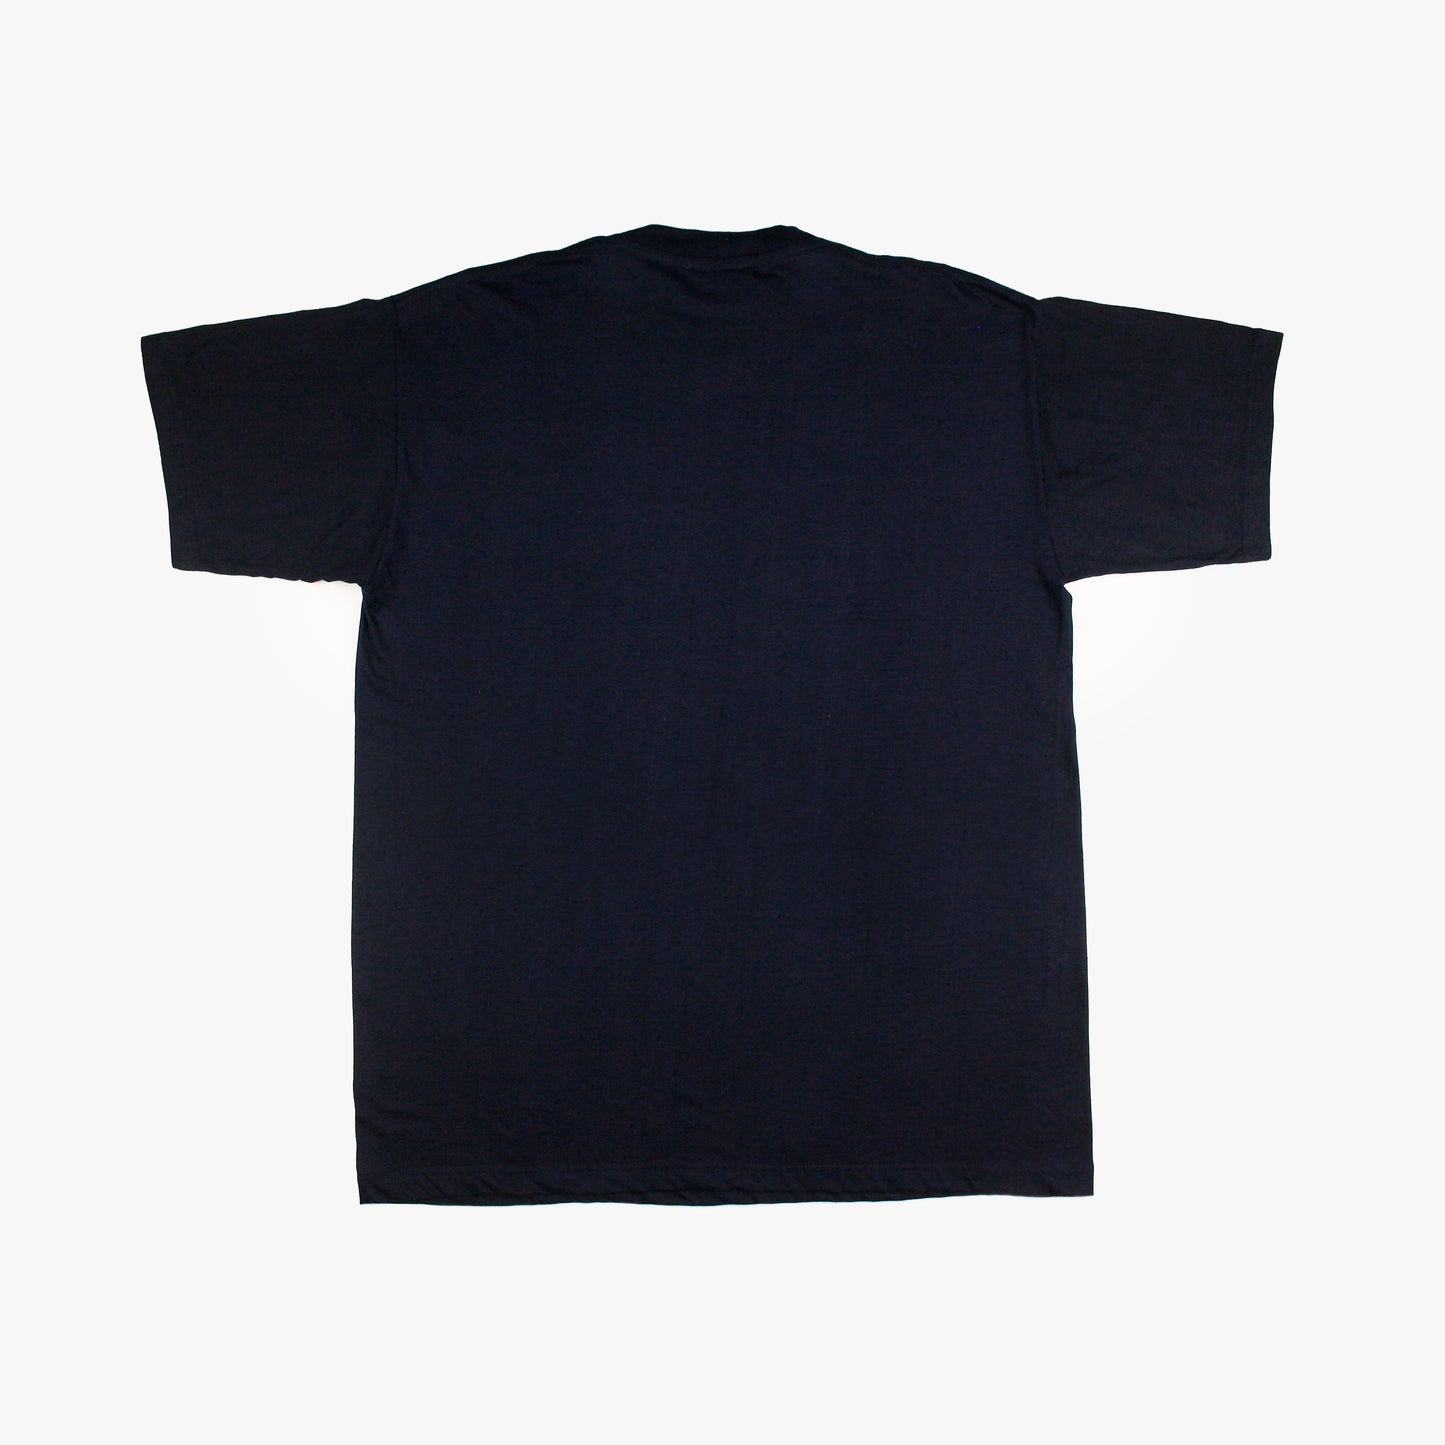 Corea/Japón 2002 • Camiseta Mercancía Oficial *Con Etiquetas* • XL